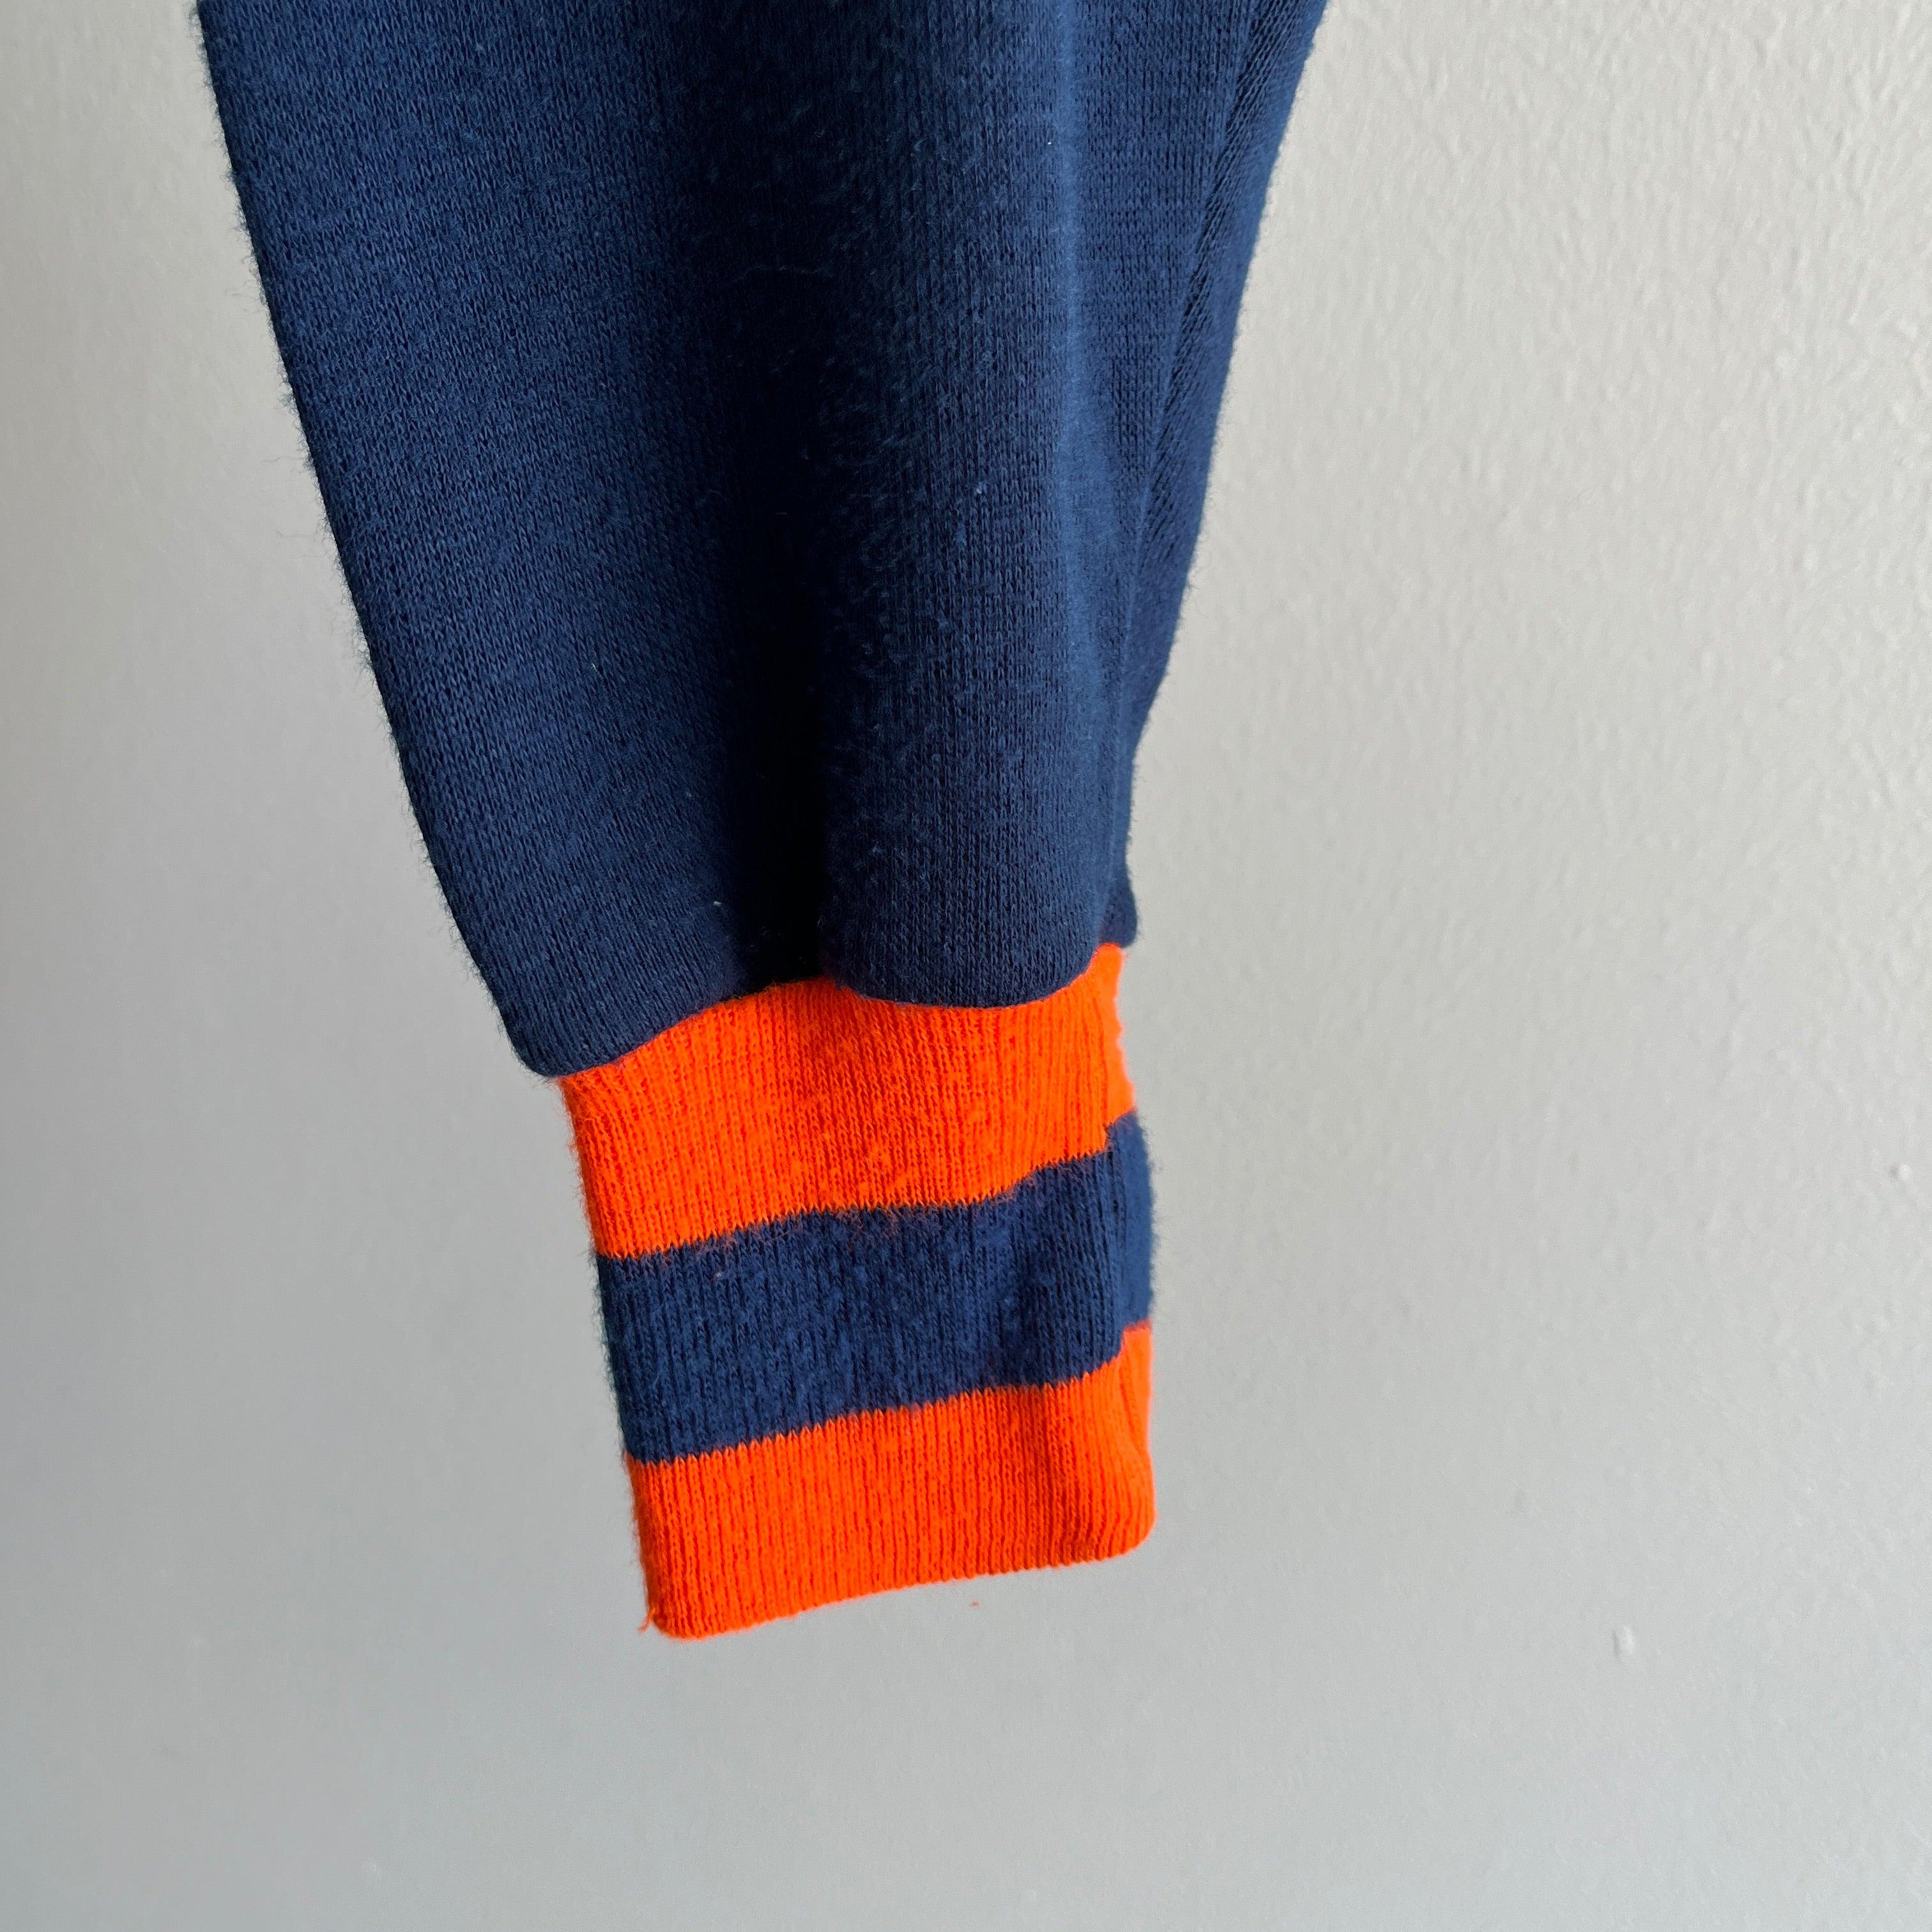 Sweat-shirt zippé léger bleu marine et orange des années 1970